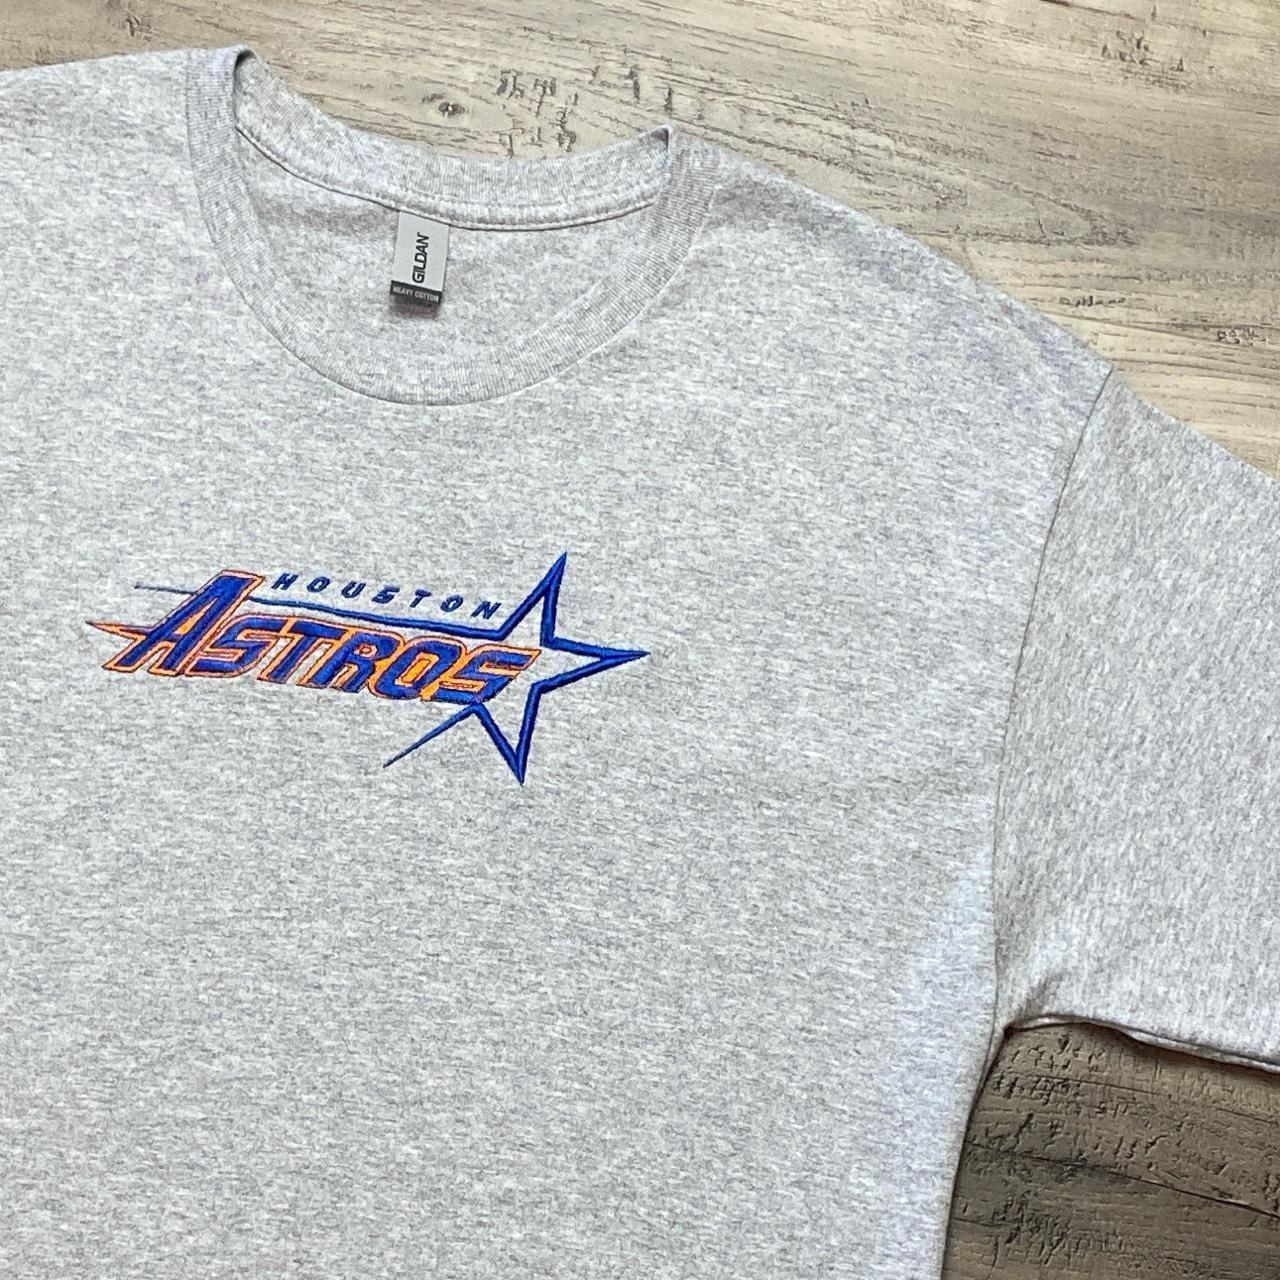 Houston Astros T-Shirt Small / White